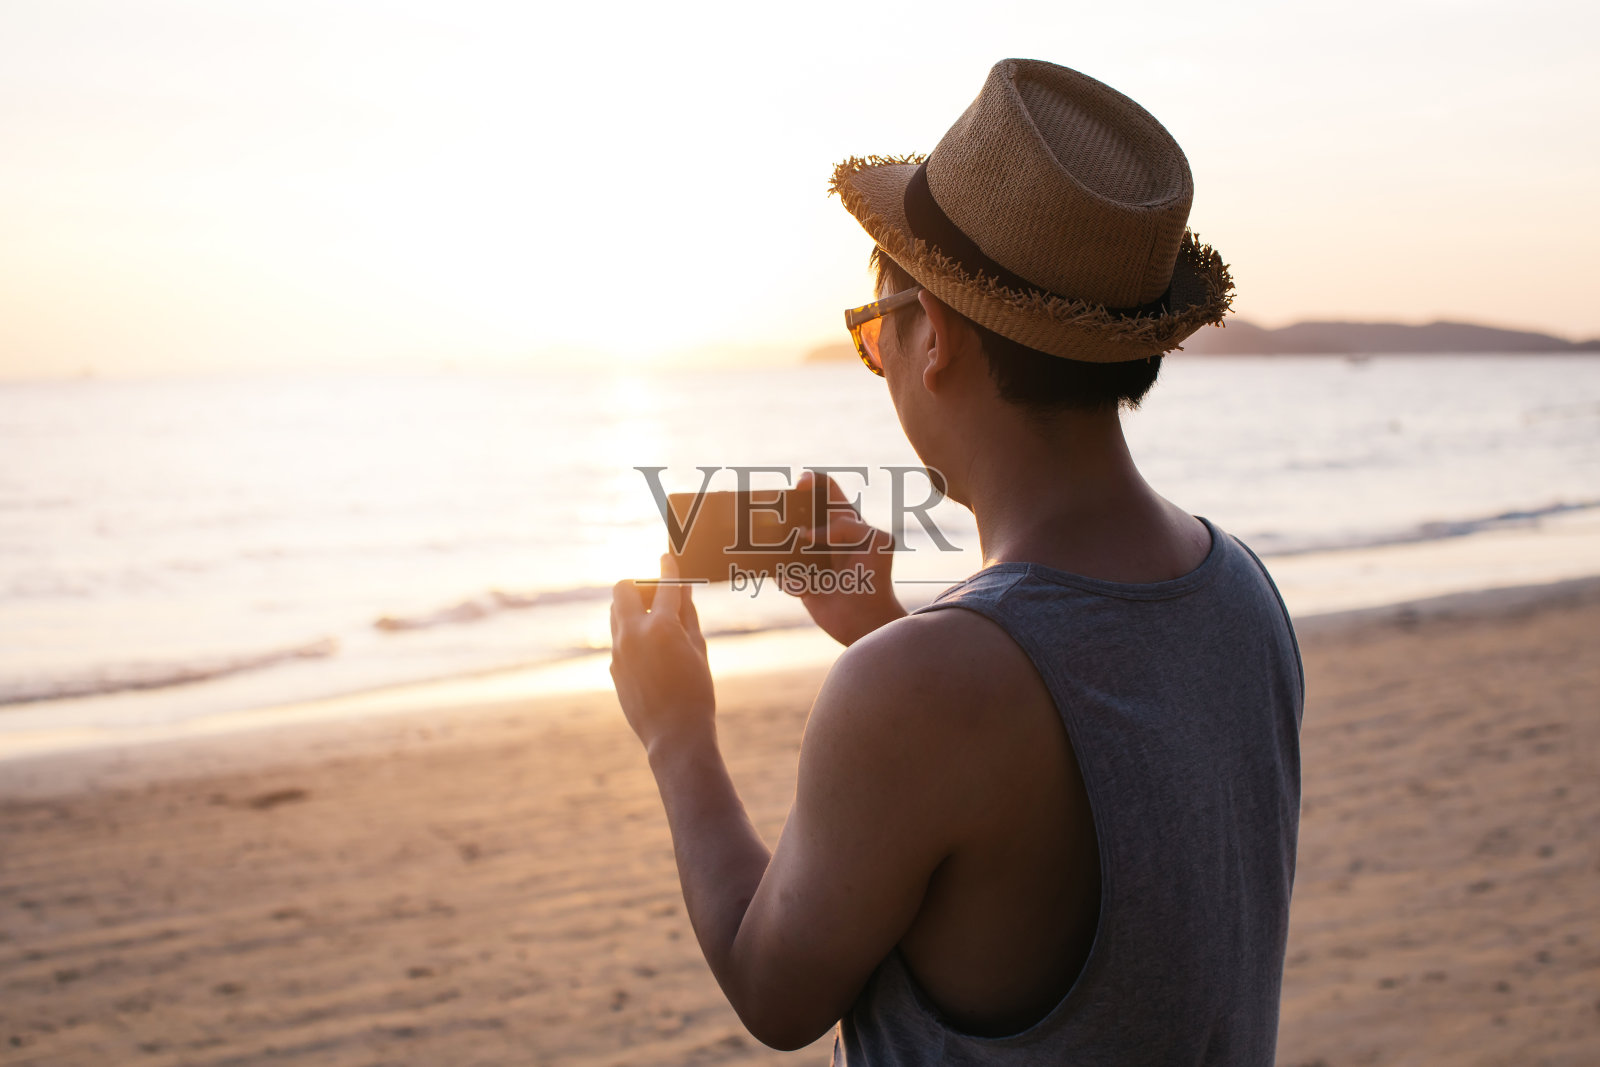 剪影的背影年轻男性旅行背包客与帽子拍照的夏天海滩风景日落-旅游照片瞬间捕捉概念照片摄影图片